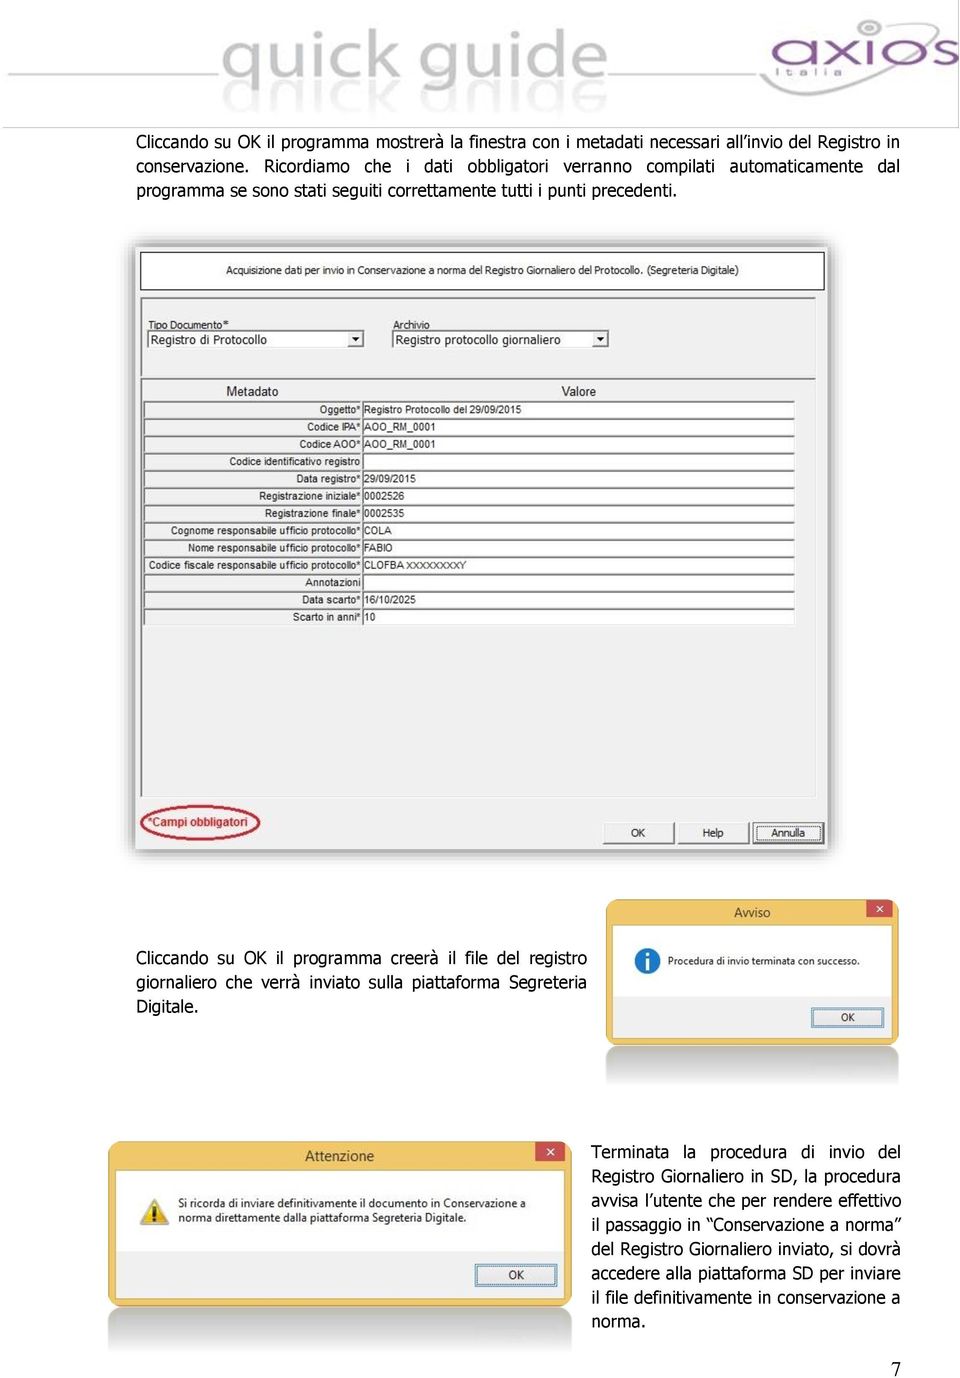 Cliccando su OK il programma creerà il file del registro giornaliero che verrà inviato sulla piattaforma Segreteria Digitale.